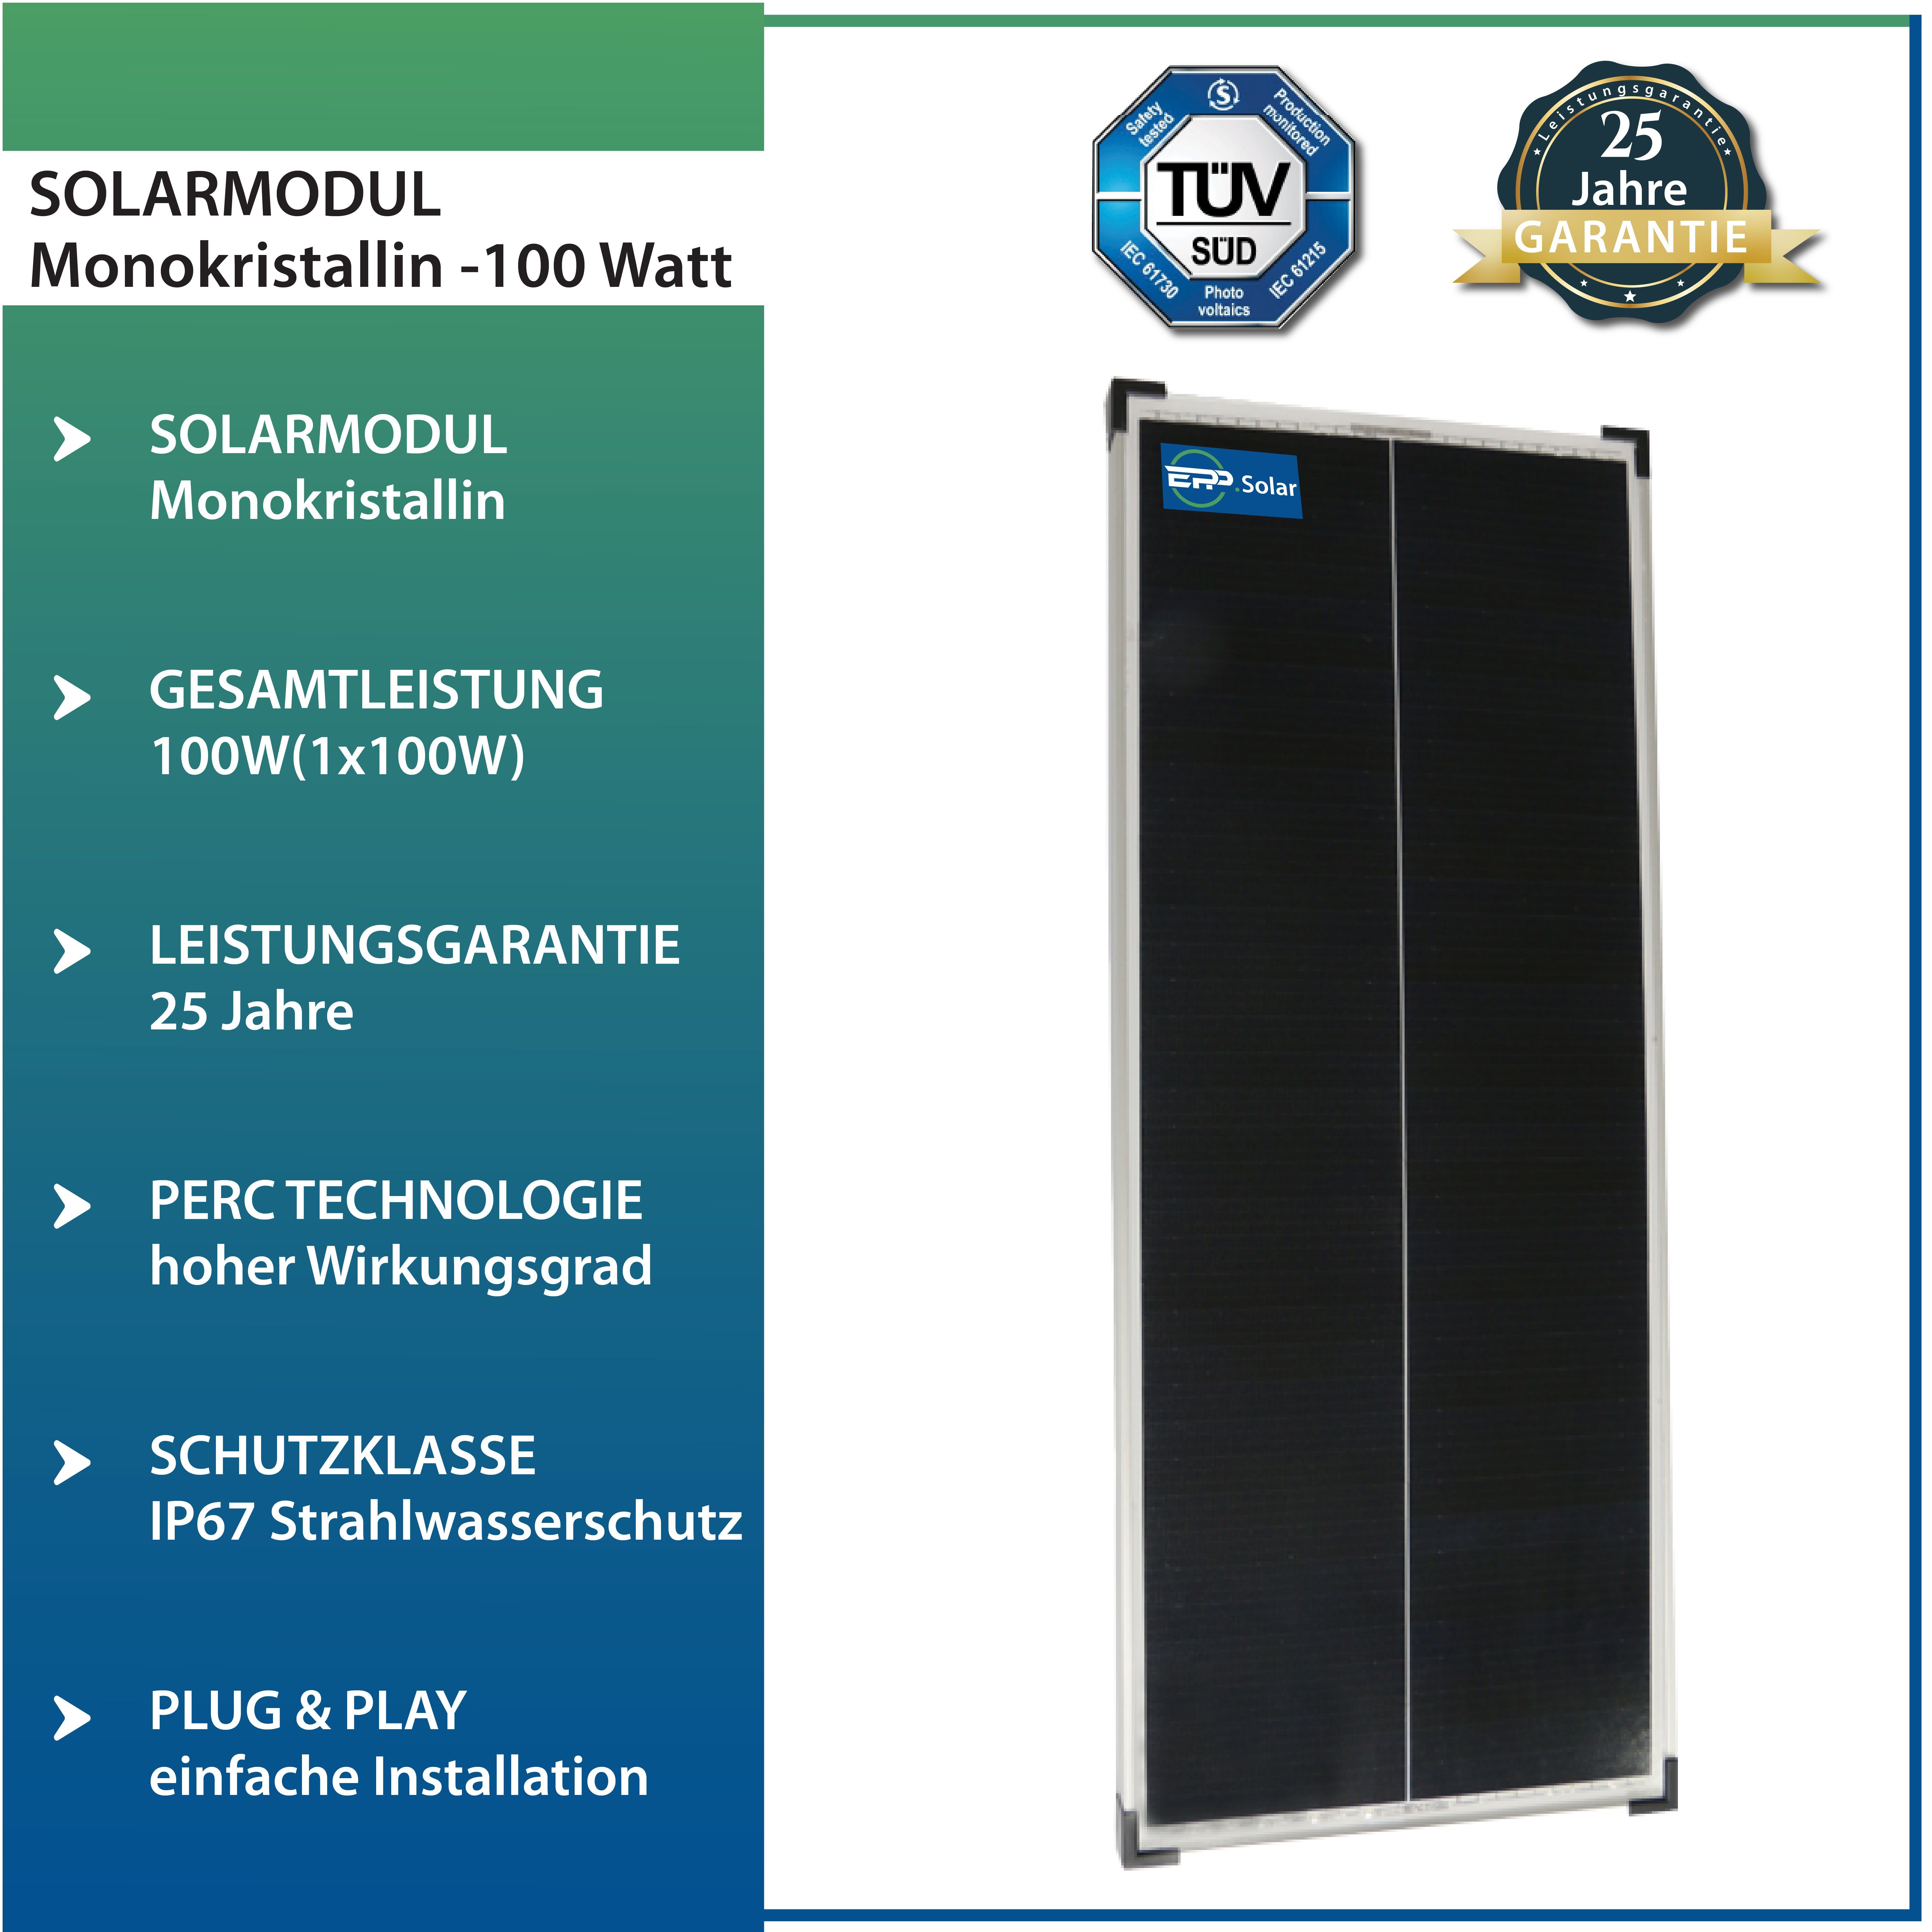 Silber-46 Camper, Solaranlage Mono Stegpearl für Wohnwagen 5X100W & Solarmodul Wohnmobile